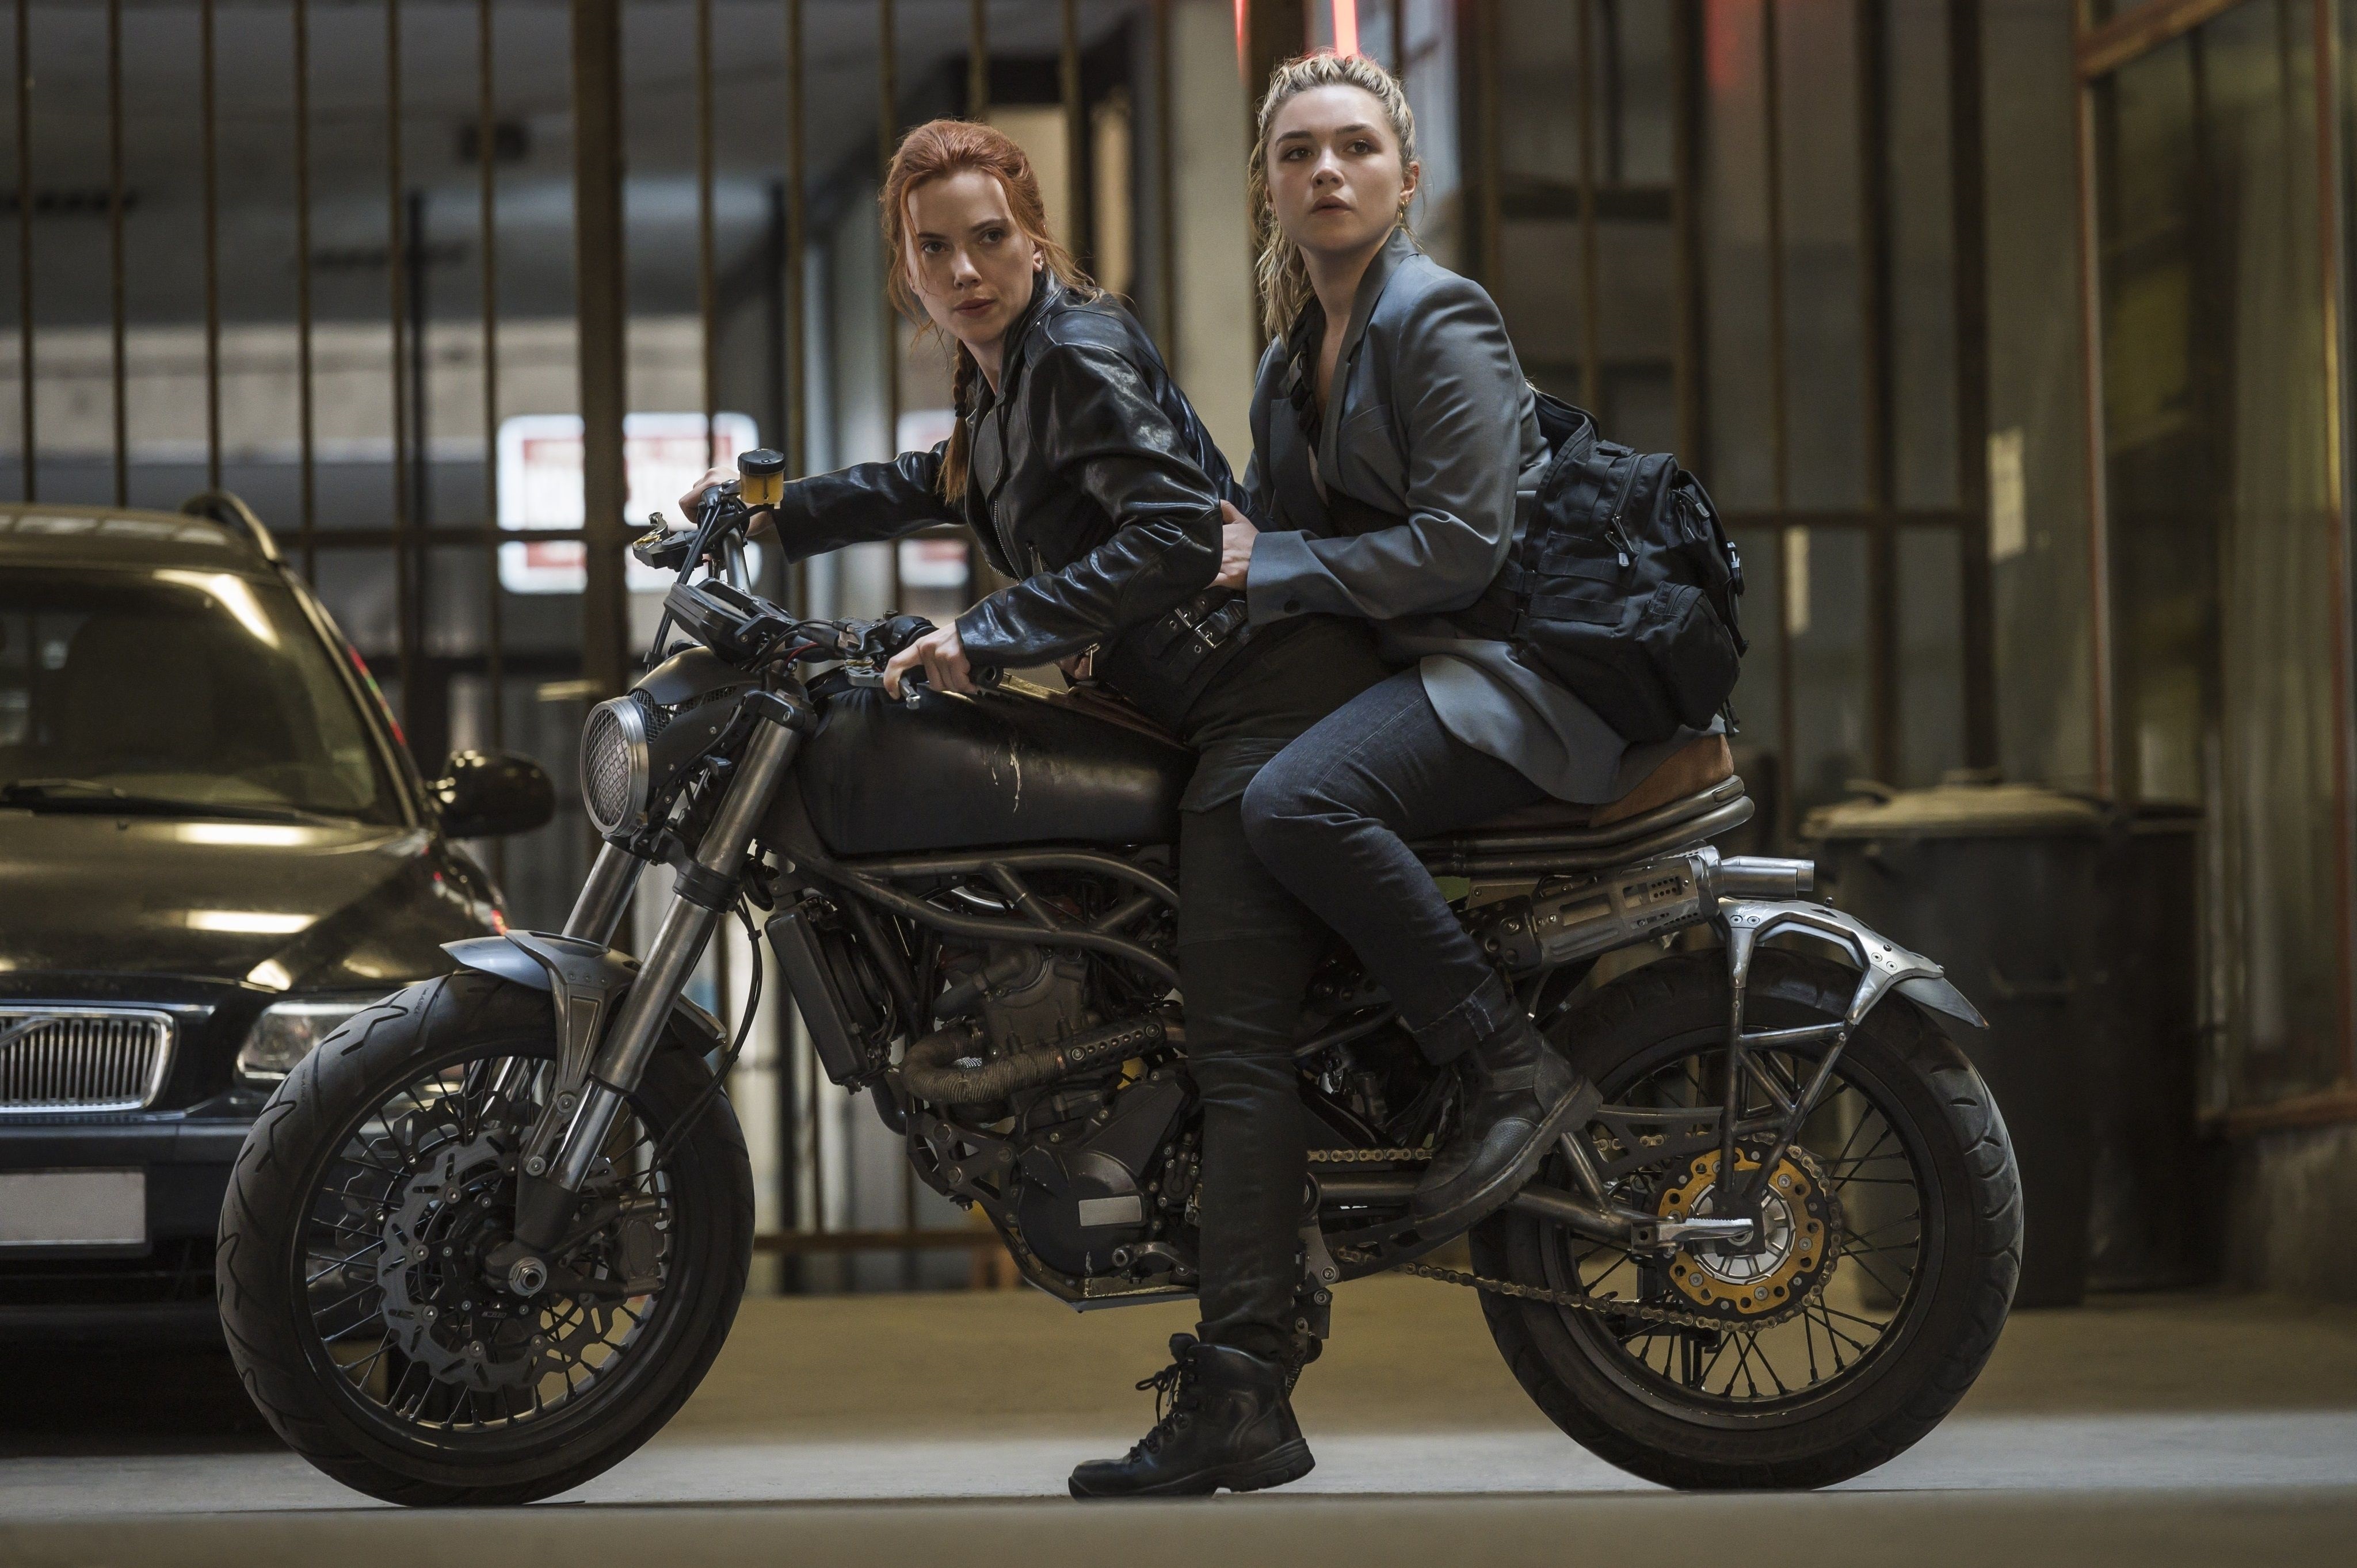 Fotograma cedido por Marvel Studios donde aparecen las actrices Scarlett Johansson (i), como Natasha Romanoff, y Florence Pugh (d), como Yelena Belova, durante una escena de la película "Black Widow". EFE/Marvel Studios